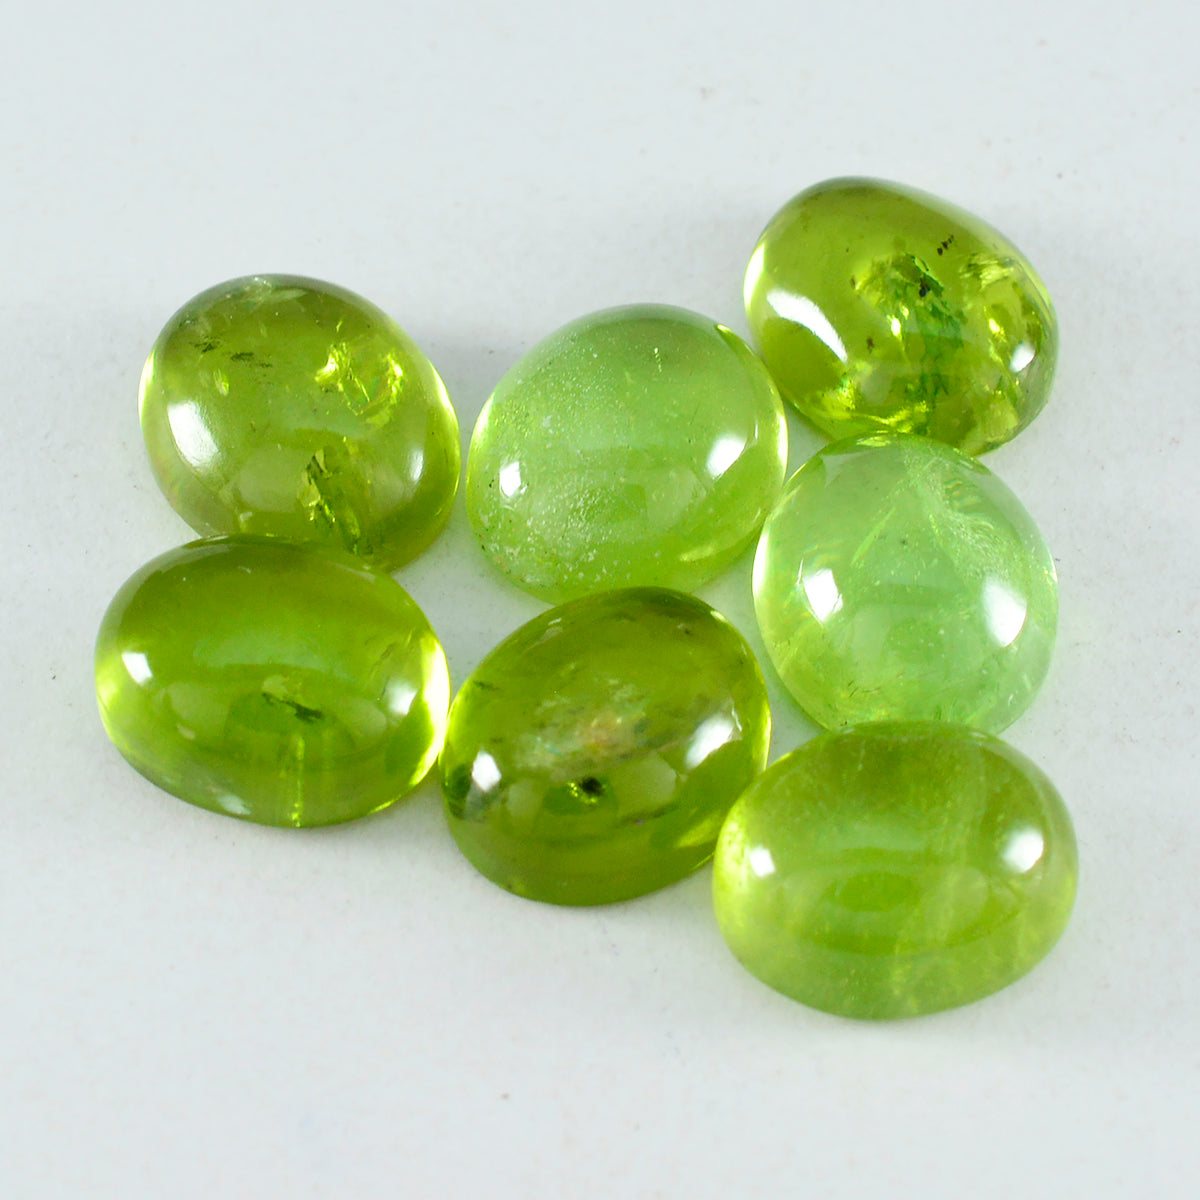 Riyogems 1 pieza cabujón de peridoto verde 10x12 mm forma ovalada gemas de calidad sorprendente